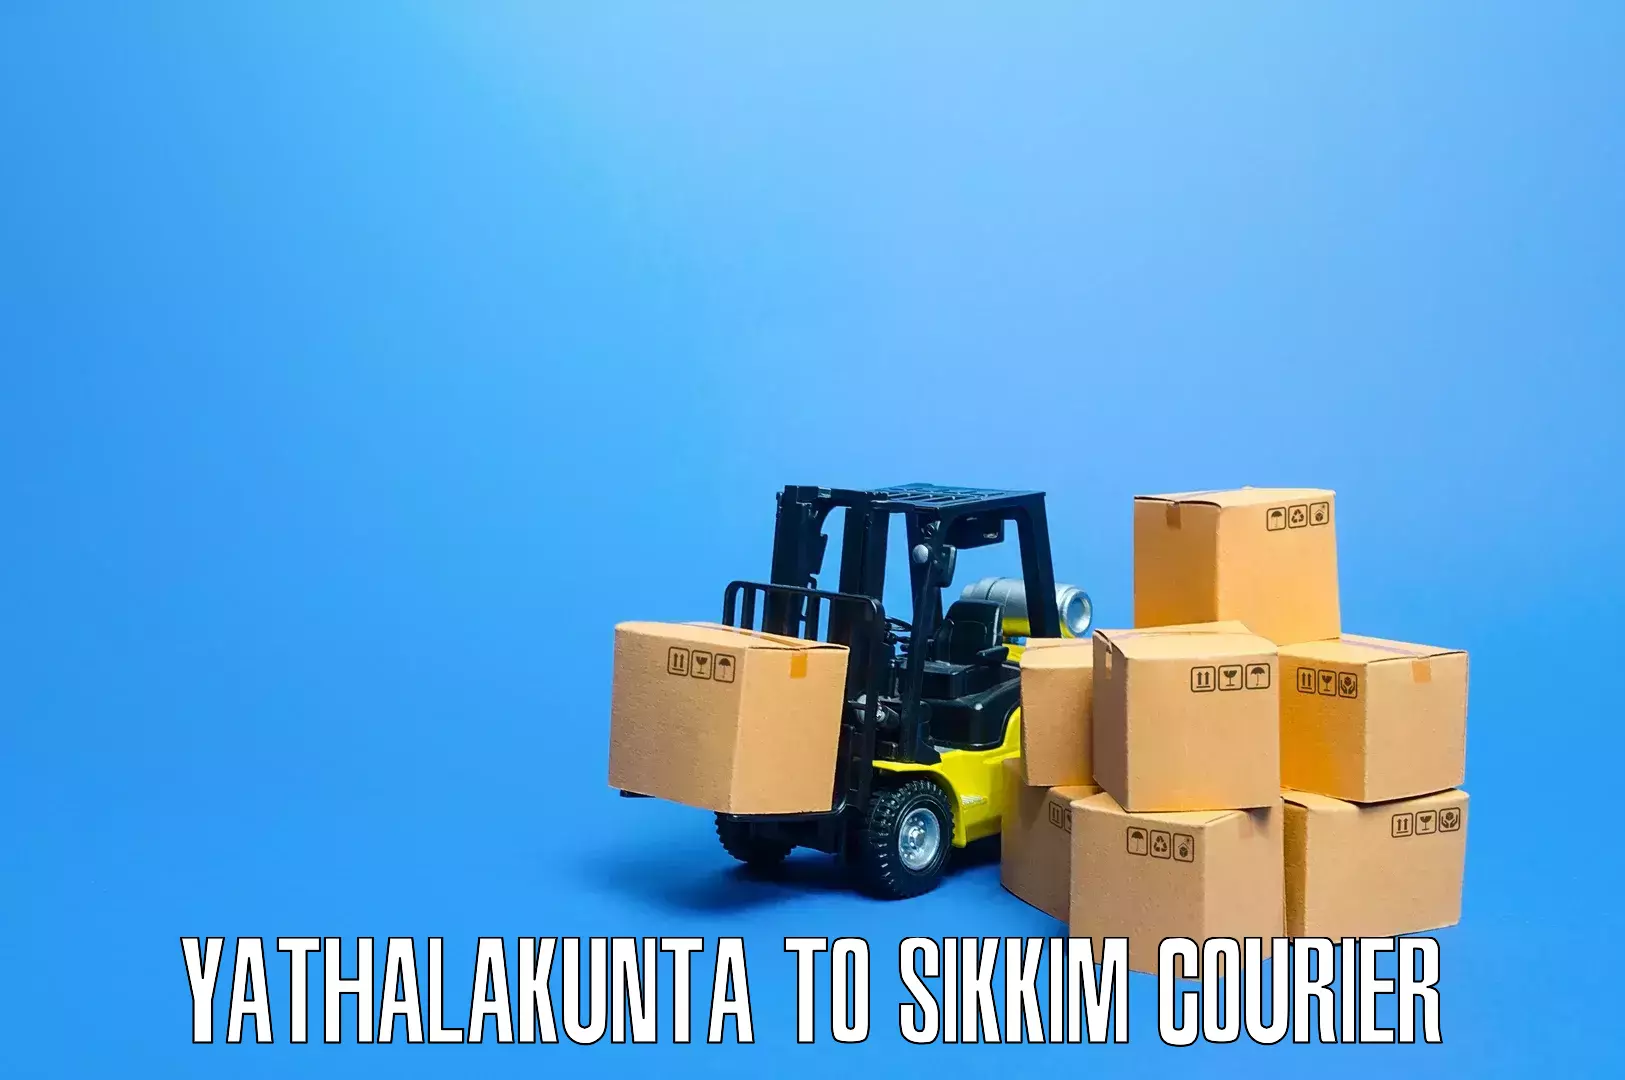 Professional furniture shifting Yathalakunta to Sikkim